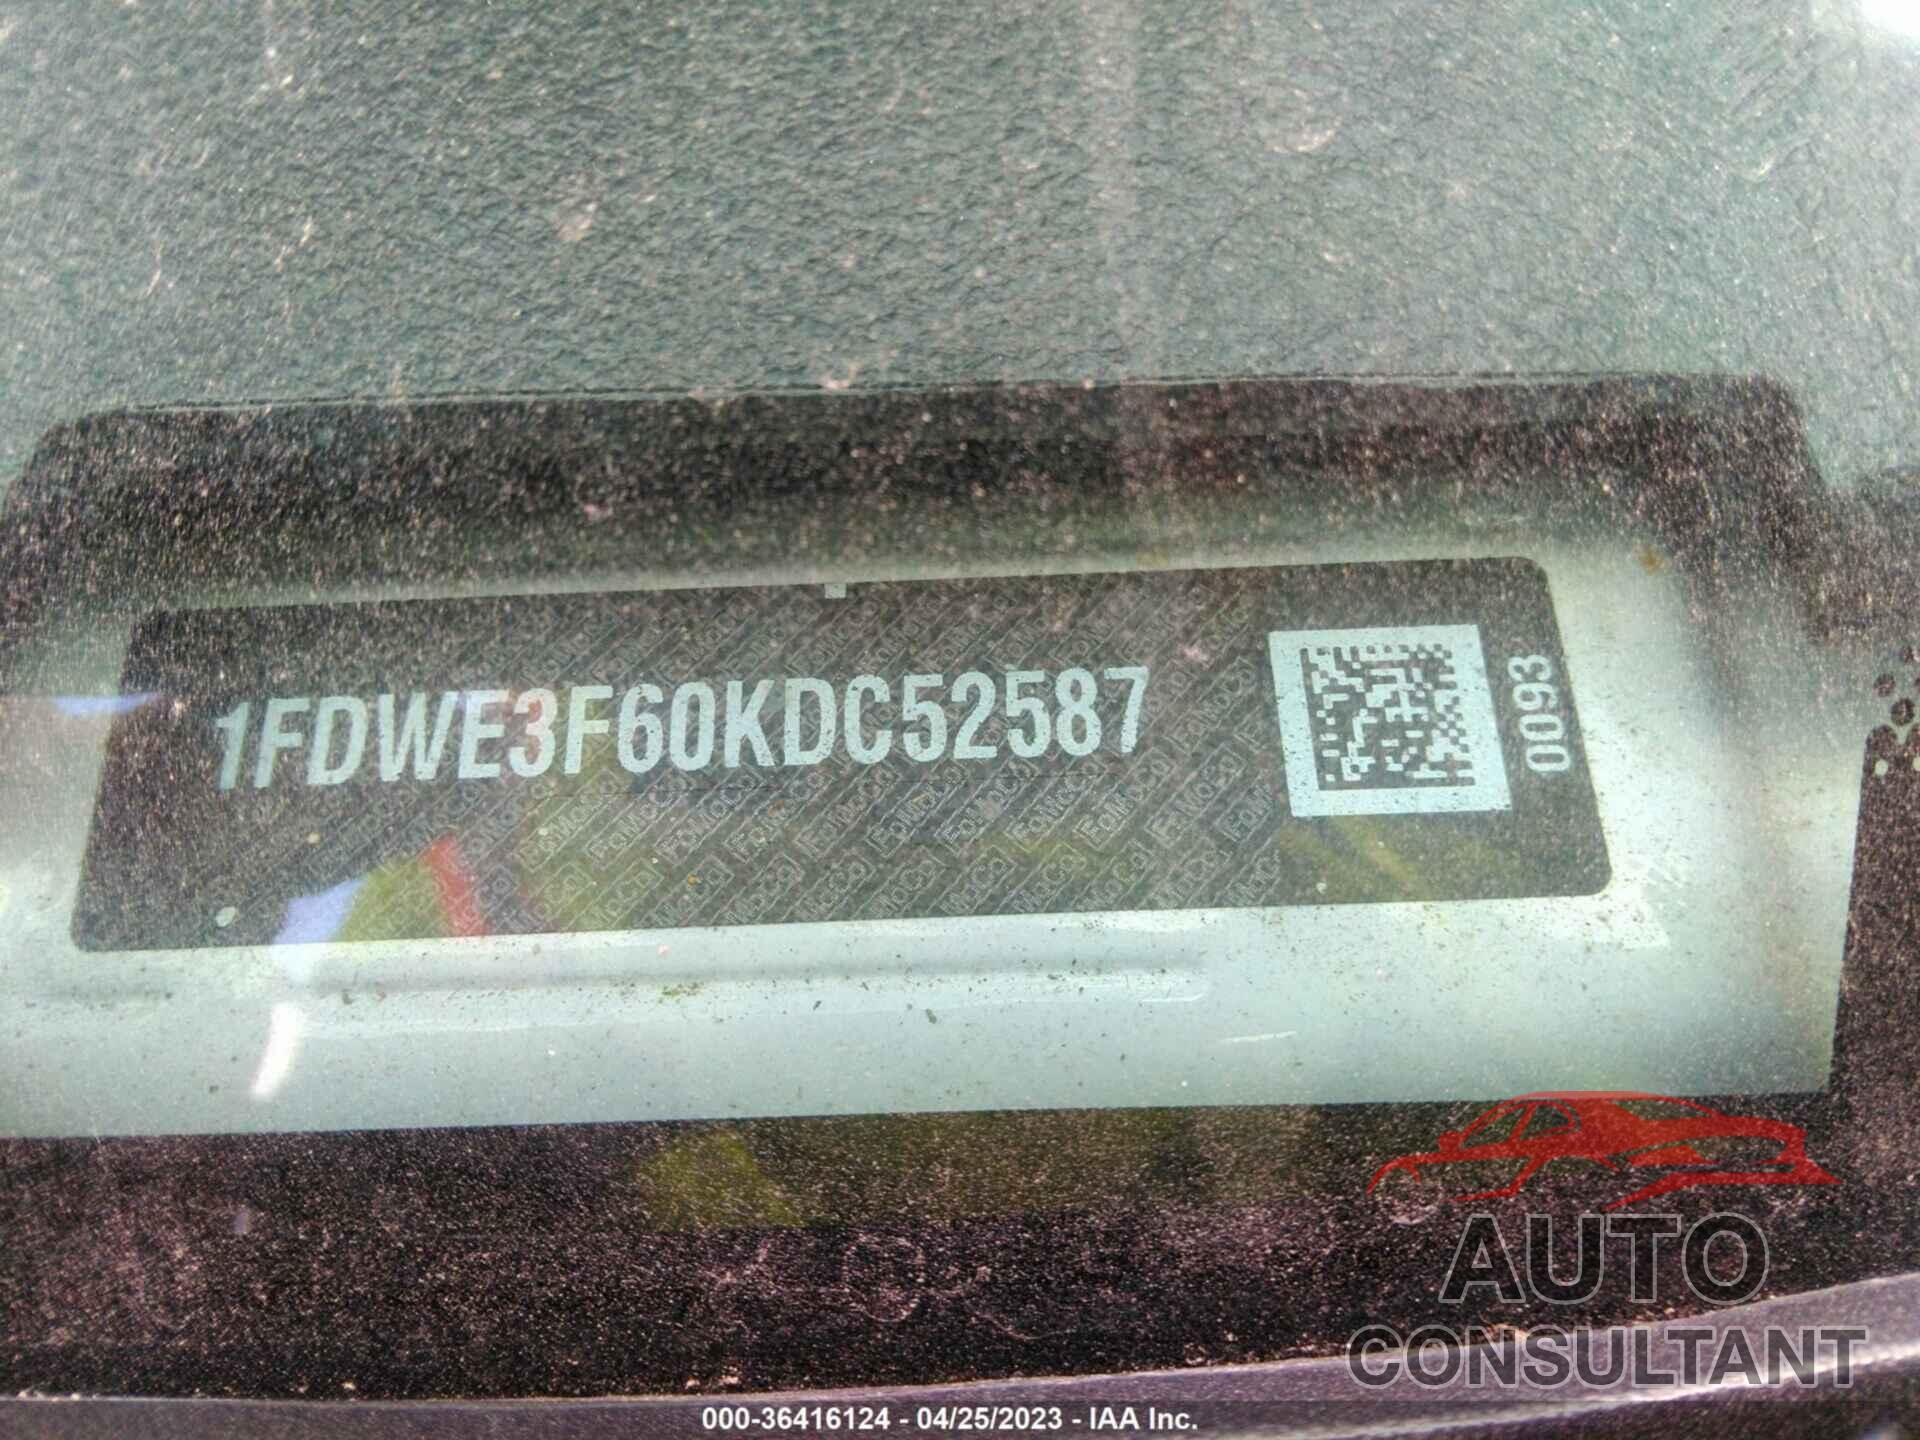 FORD E-SERIES CUTAWAY 2019 - 1FDWE3F60KDC52587